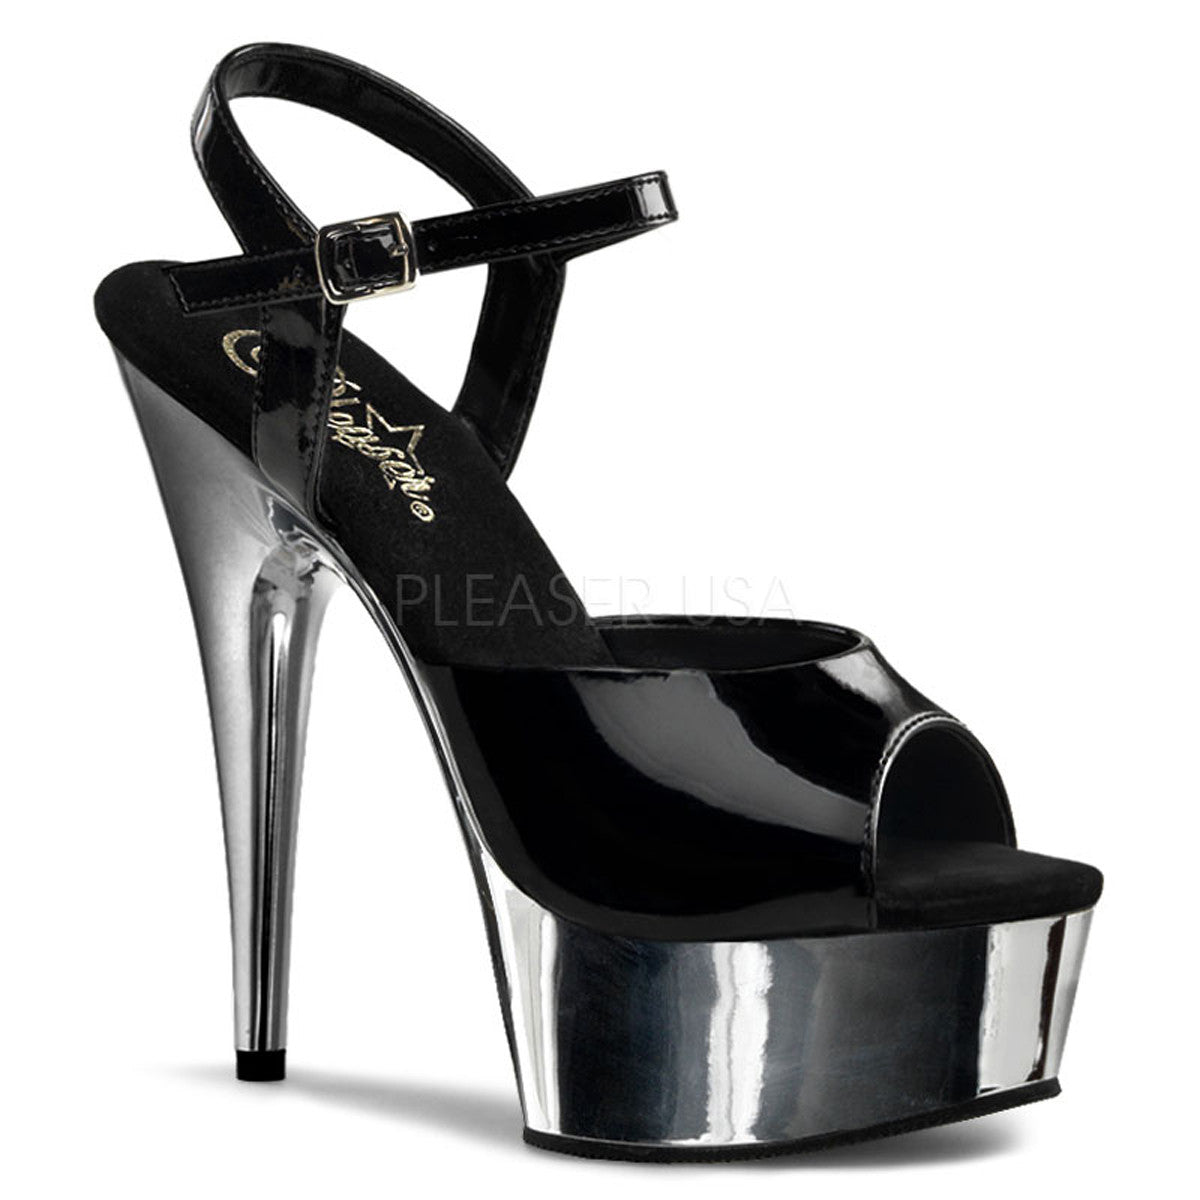 PLEASER DELIGHT-609 Black-Silver Chrome Ankle Strap Sandals - Shoecup.com